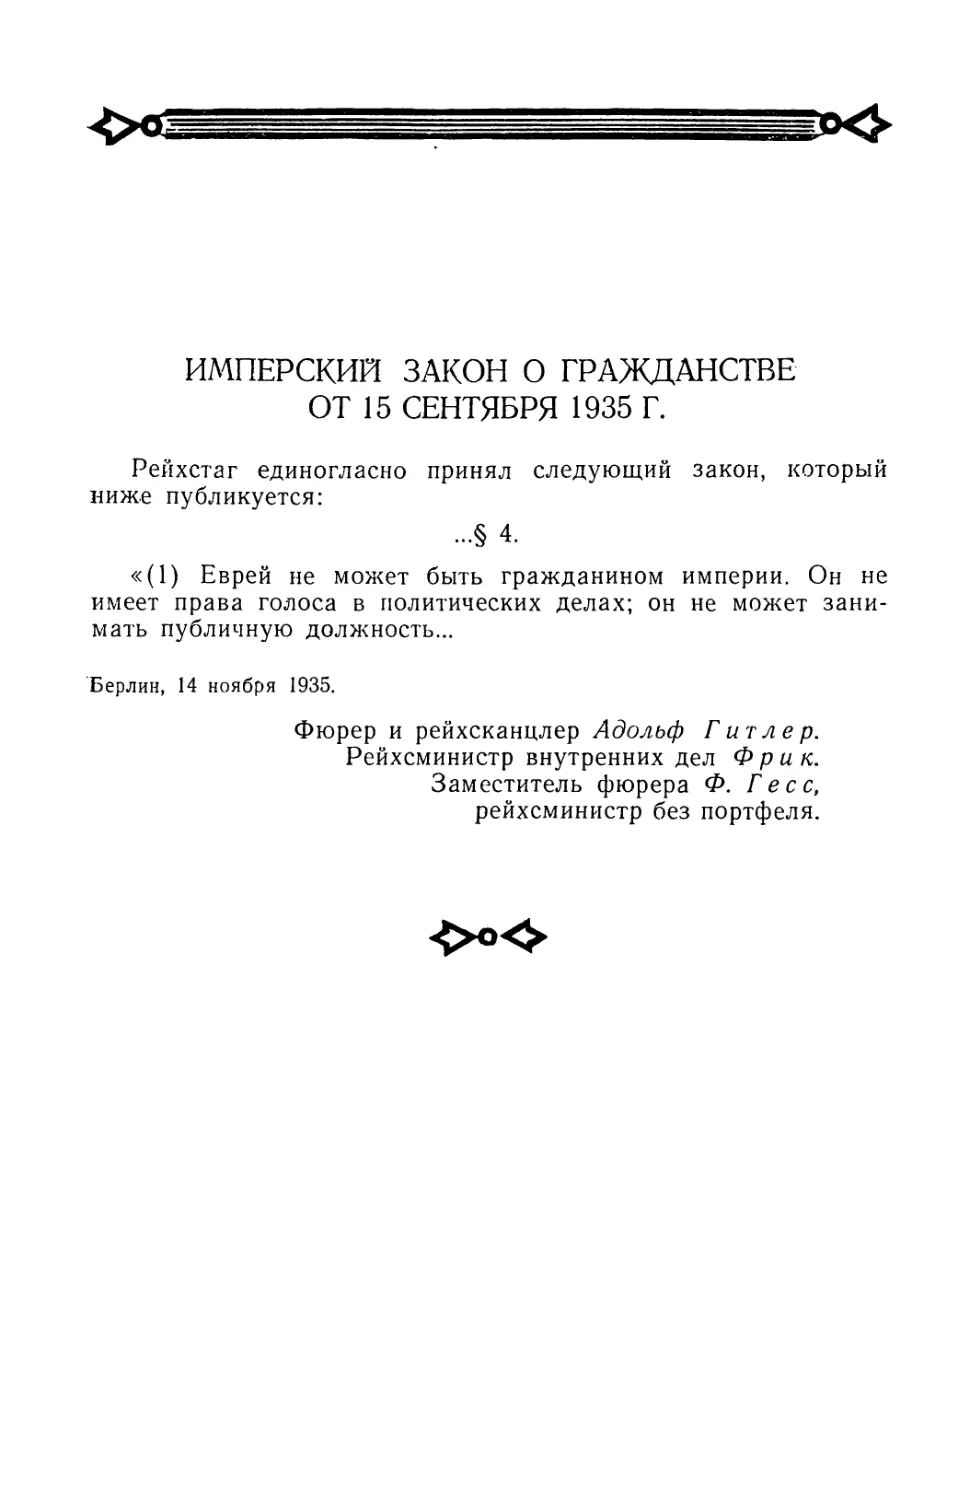 Имперский закон о гражданстве от 15 сентября 1935 г.